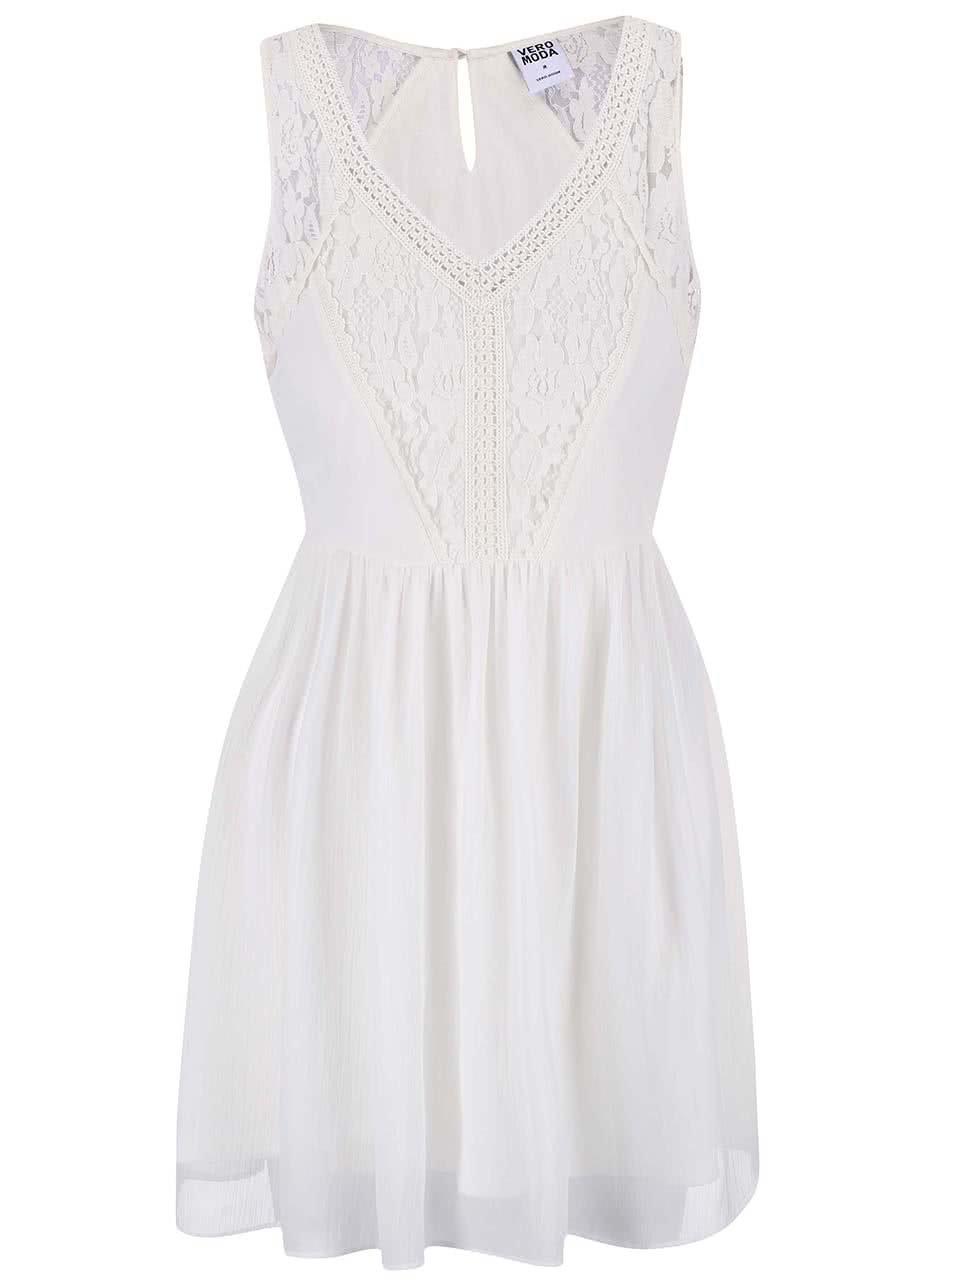 Krémové šaty s šifónovou sukní Vero Moda Freja